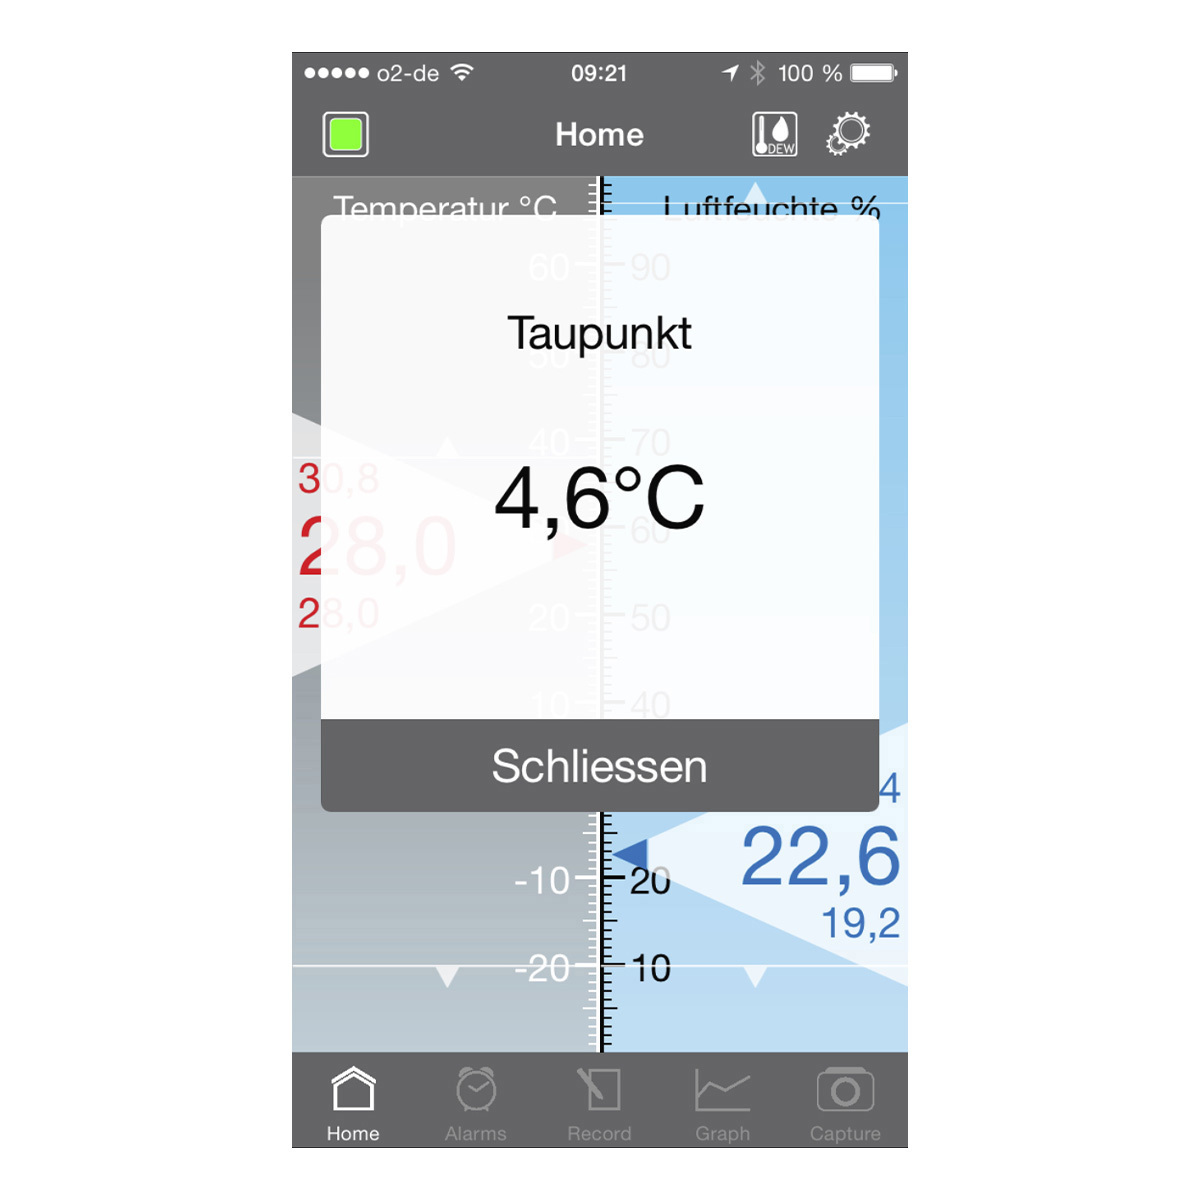 30-5035-01-thermo-hygrometer-für-smartphones-smarthy-app-anwendung3-1200x1200px.jpg